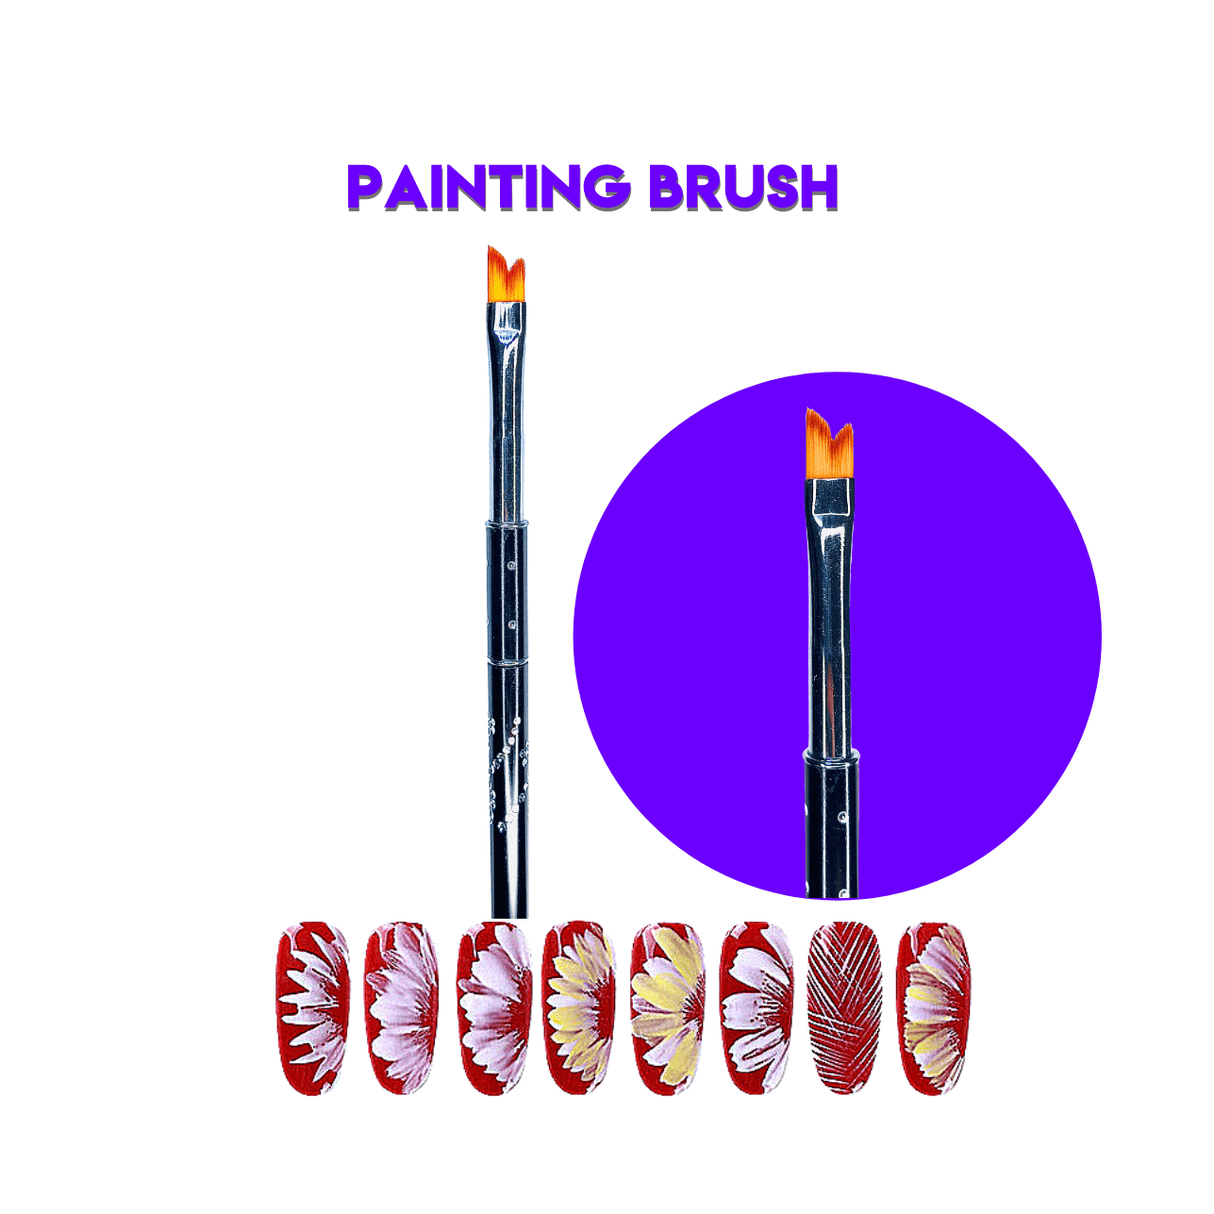 Nail Art Brush - Painting Brush #01 (1pc) - Jessica Nail & Beauty Supply - Canada Nail Beauty Supply - Art Brush